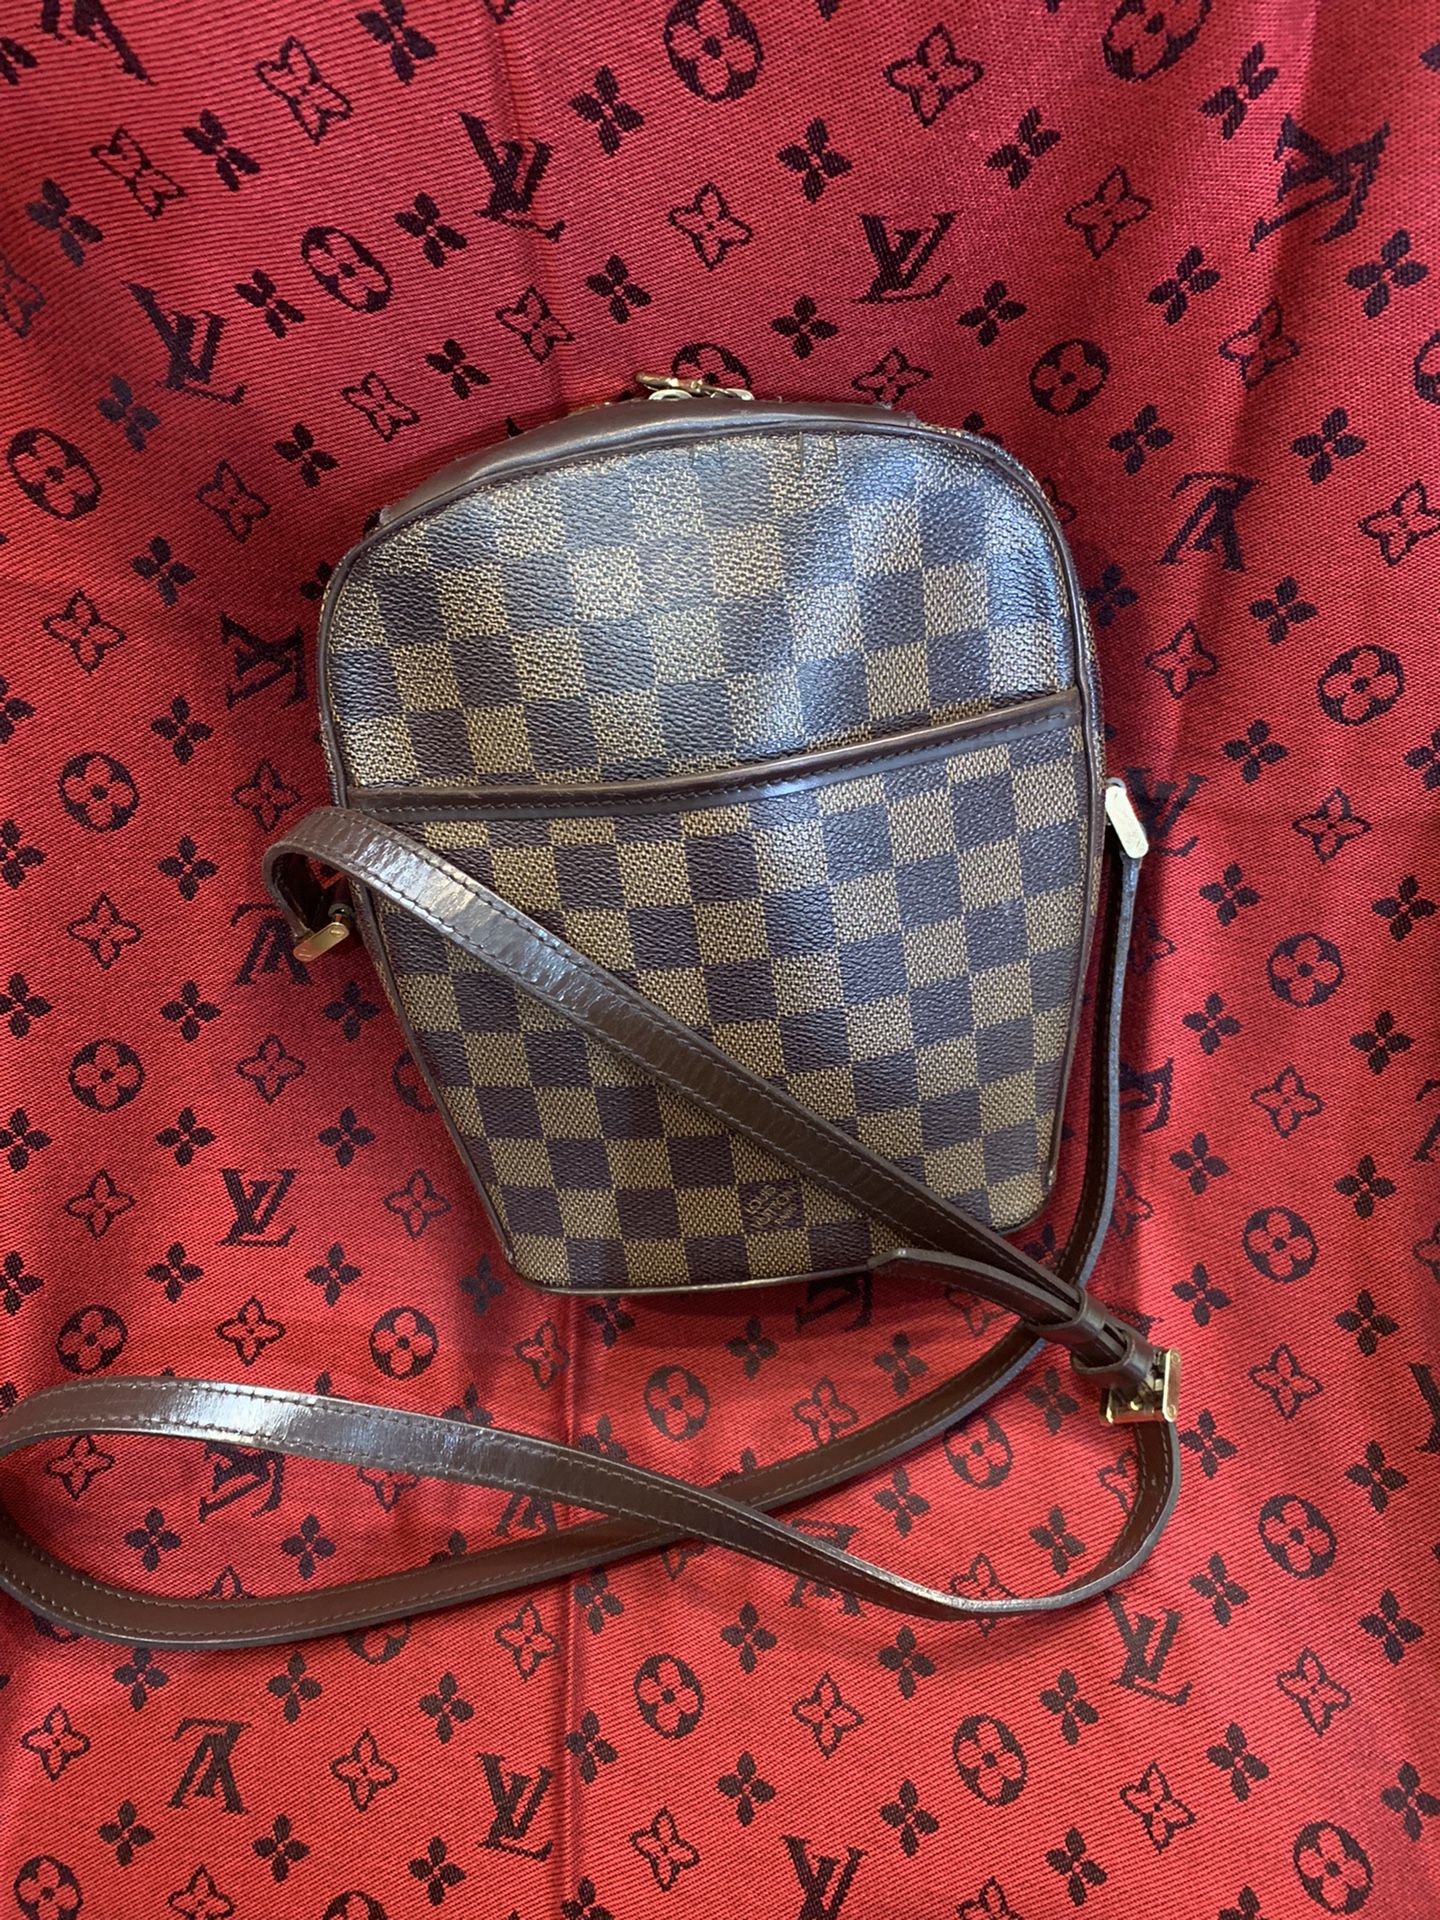 Louis Vuitton e Damier Crossbody Bag